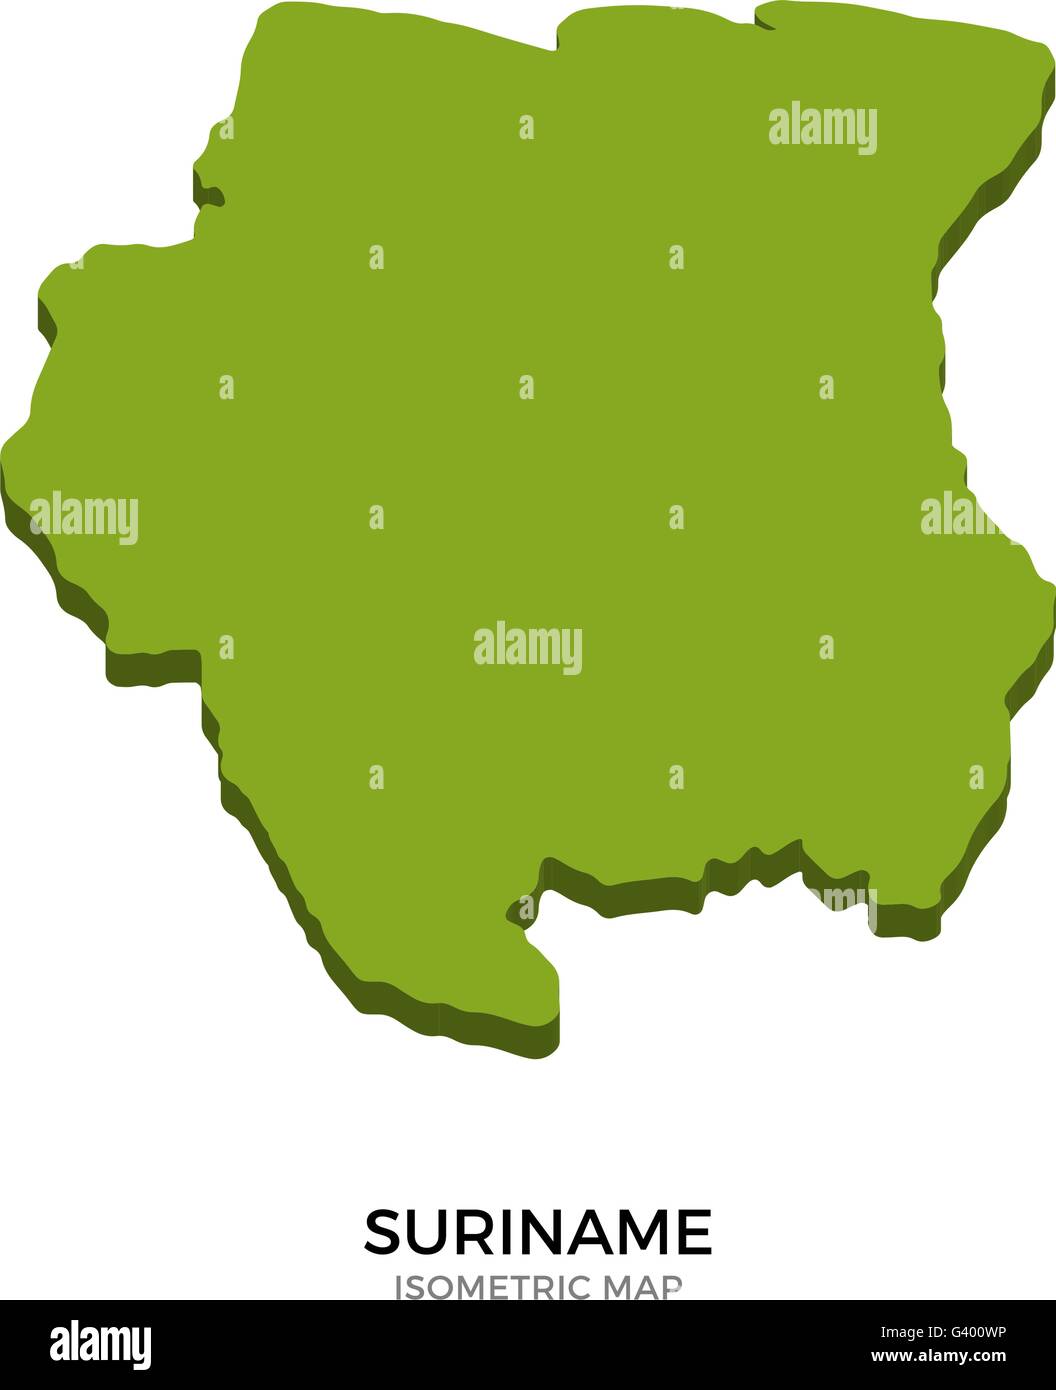 Mapa isométrico de Suriname detallada ilustración vectorial Ilustración del Vector